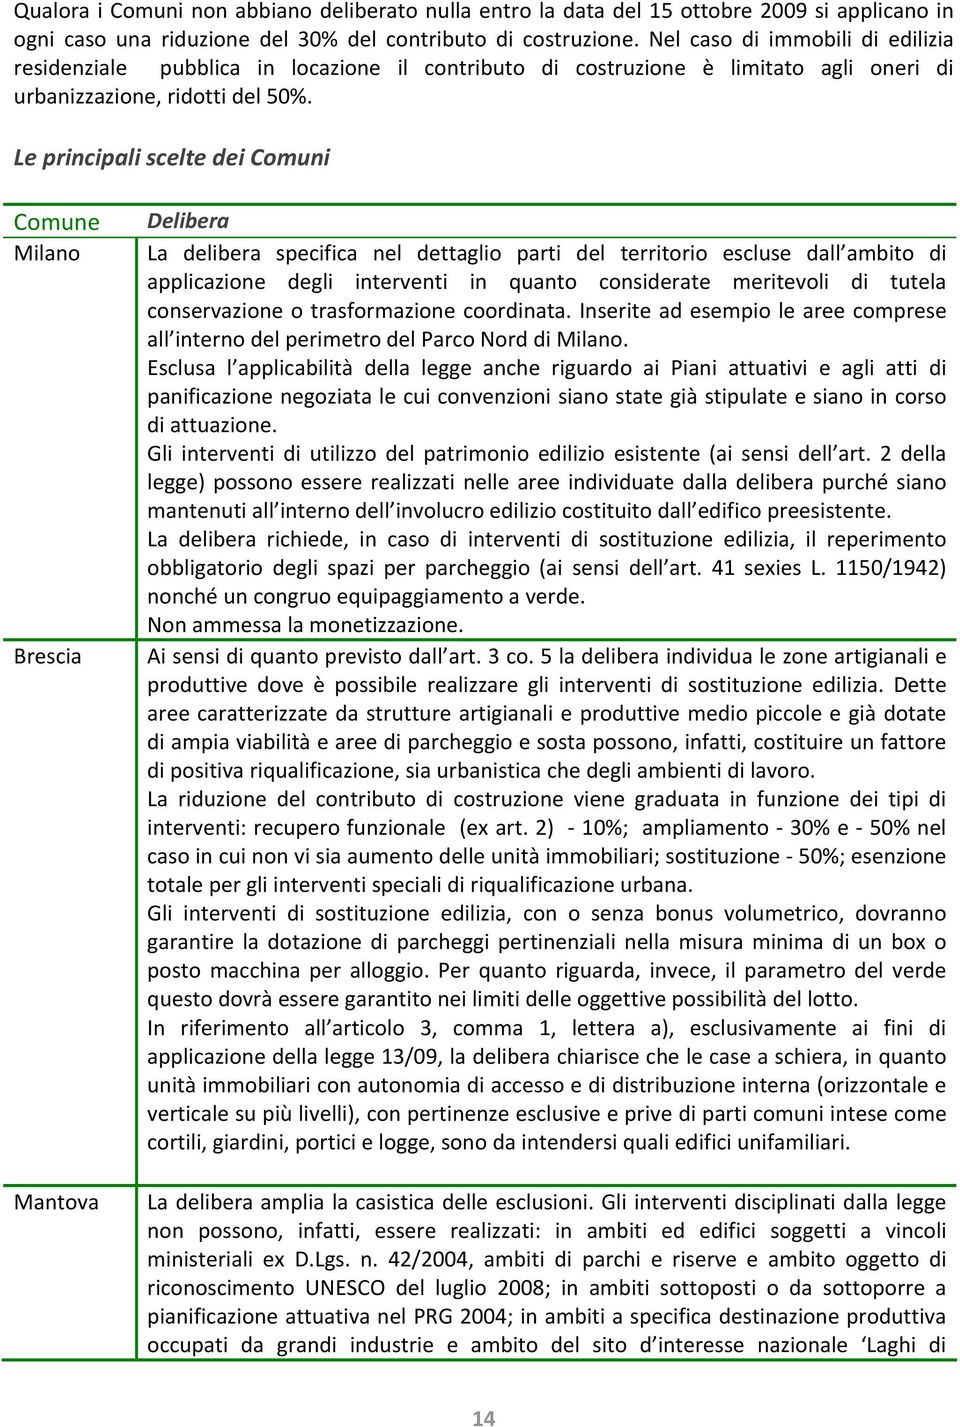 Le principali scelte dei Comuni Comune Milano Brescia Mantova Delibera La delibera specifica nel dettaglio parti del territorio escluse dall ambito di applicazione degli interventi in quanto